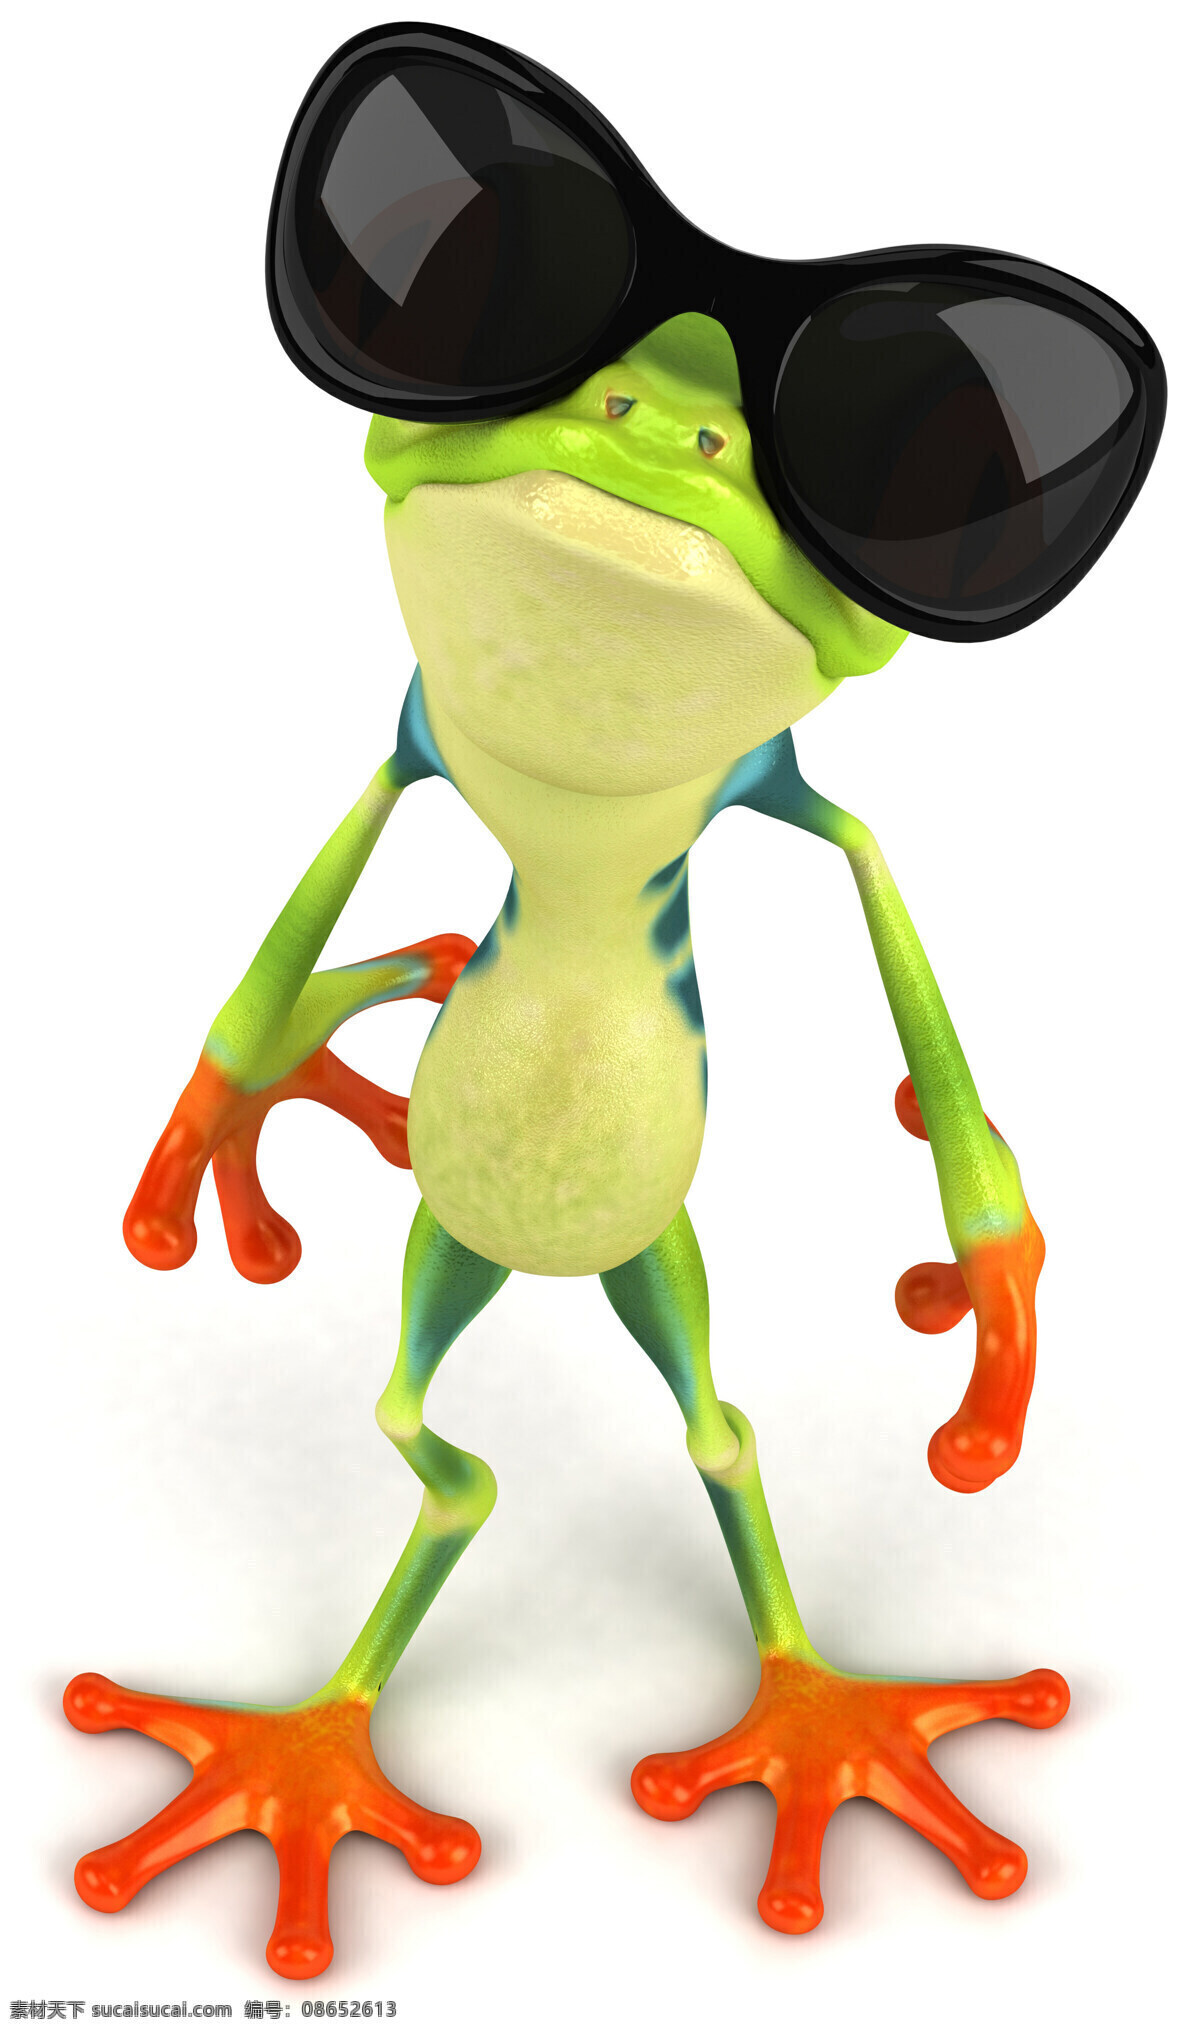 3d青蛙 卡通青蛙 疯狂青蛙 可爱逗趣青蛙 青蛙 创意 逗趣 墨镜 青蛙王子 卡通 可爱 3d设计 高清图片